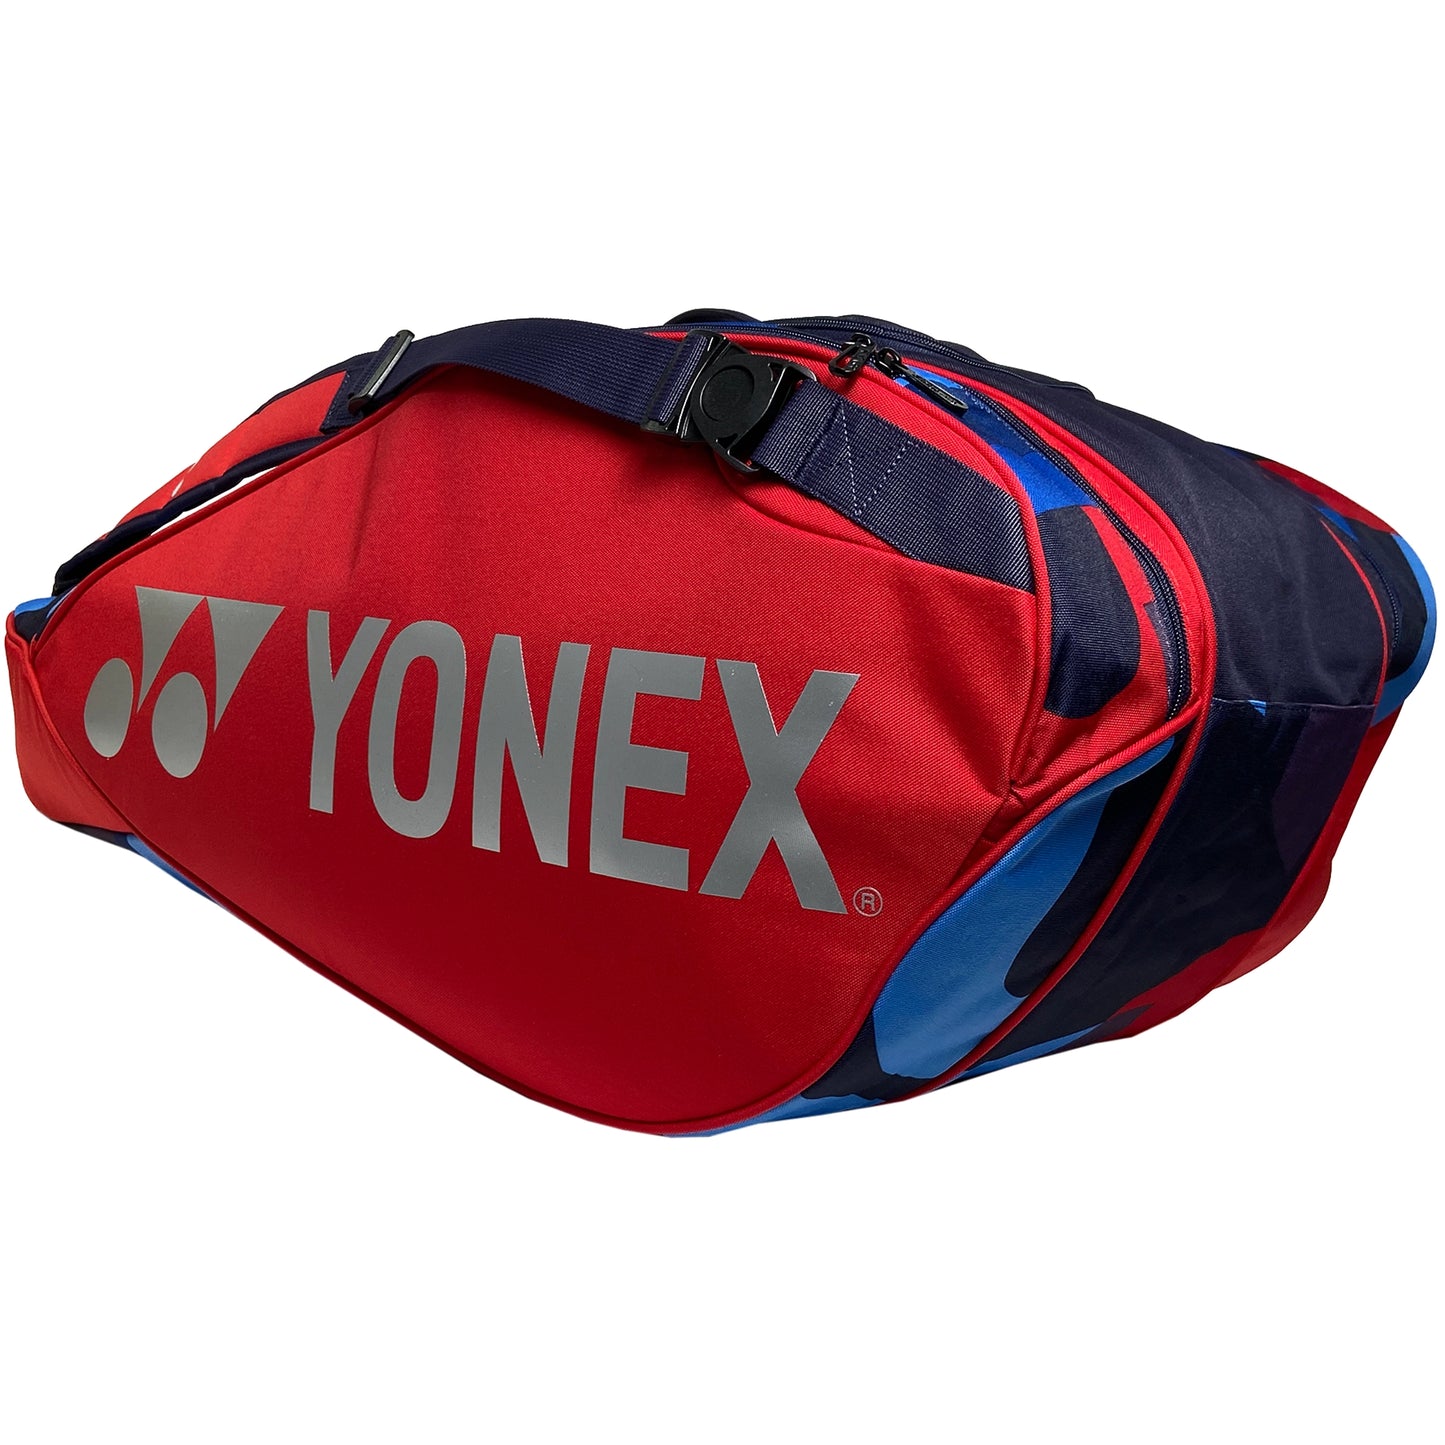 Yonex sac Pro 9 raquettes (92229EX) Scarlet